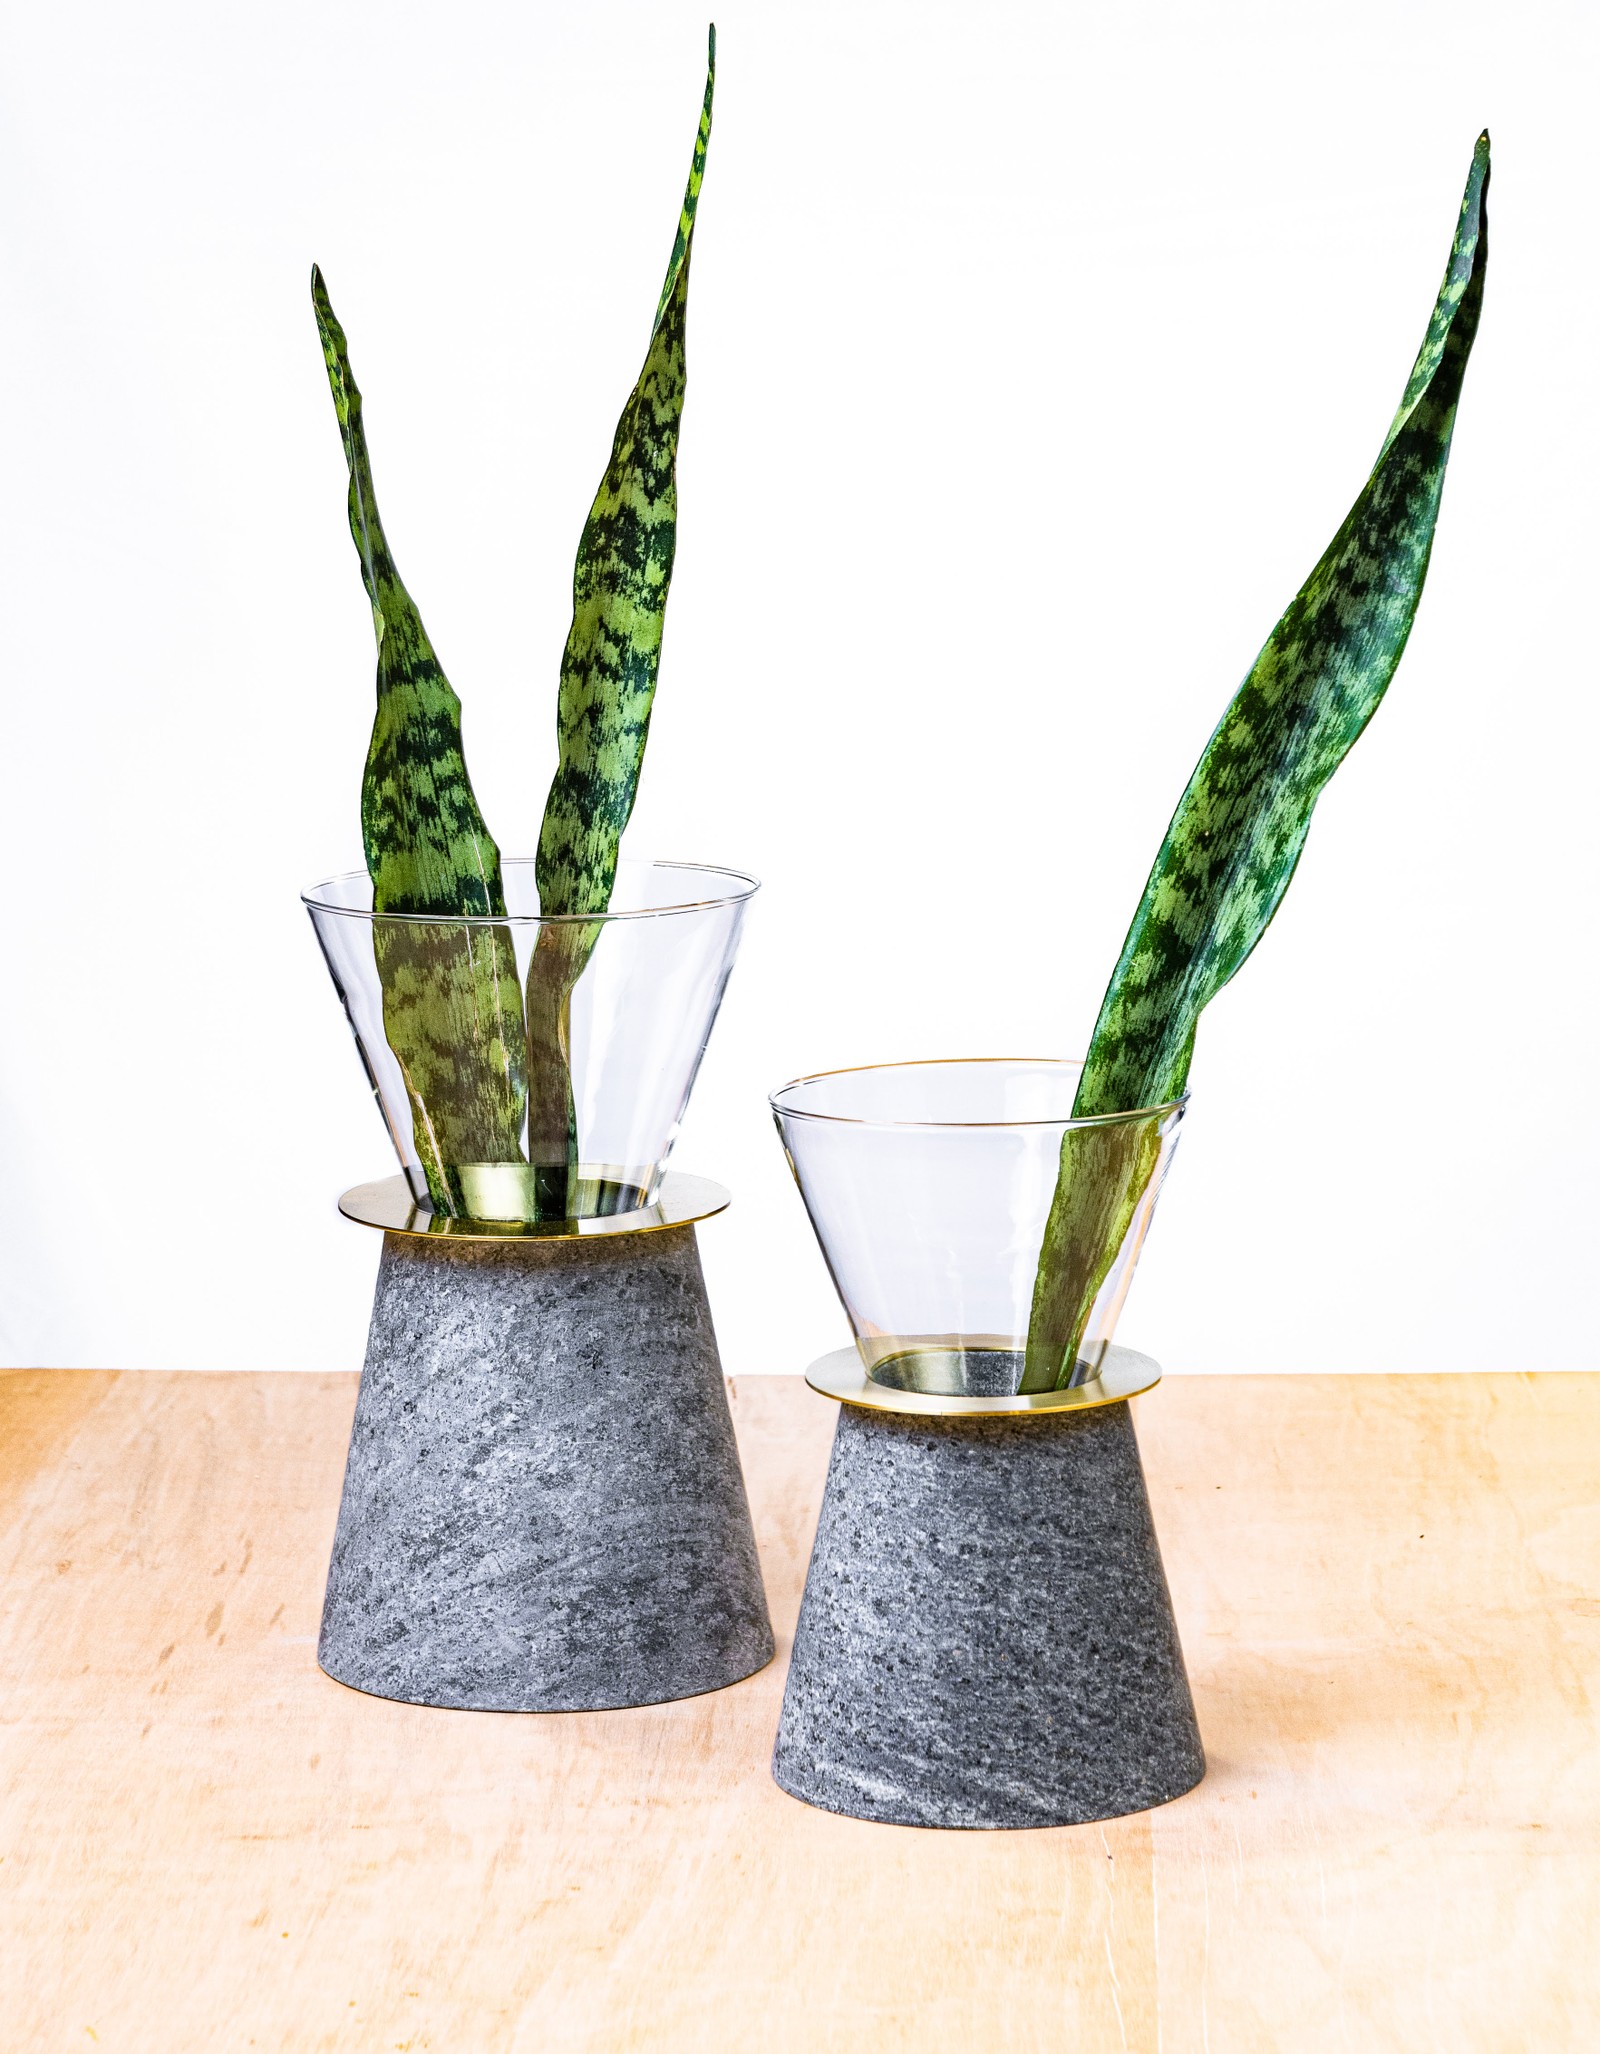 O vaso "Cone" da designer Ingrid Peixoto mescla pedra sabão, vidro e latão para criar um item moderno. A peça custa de R$ 900 a R$ 1.400 